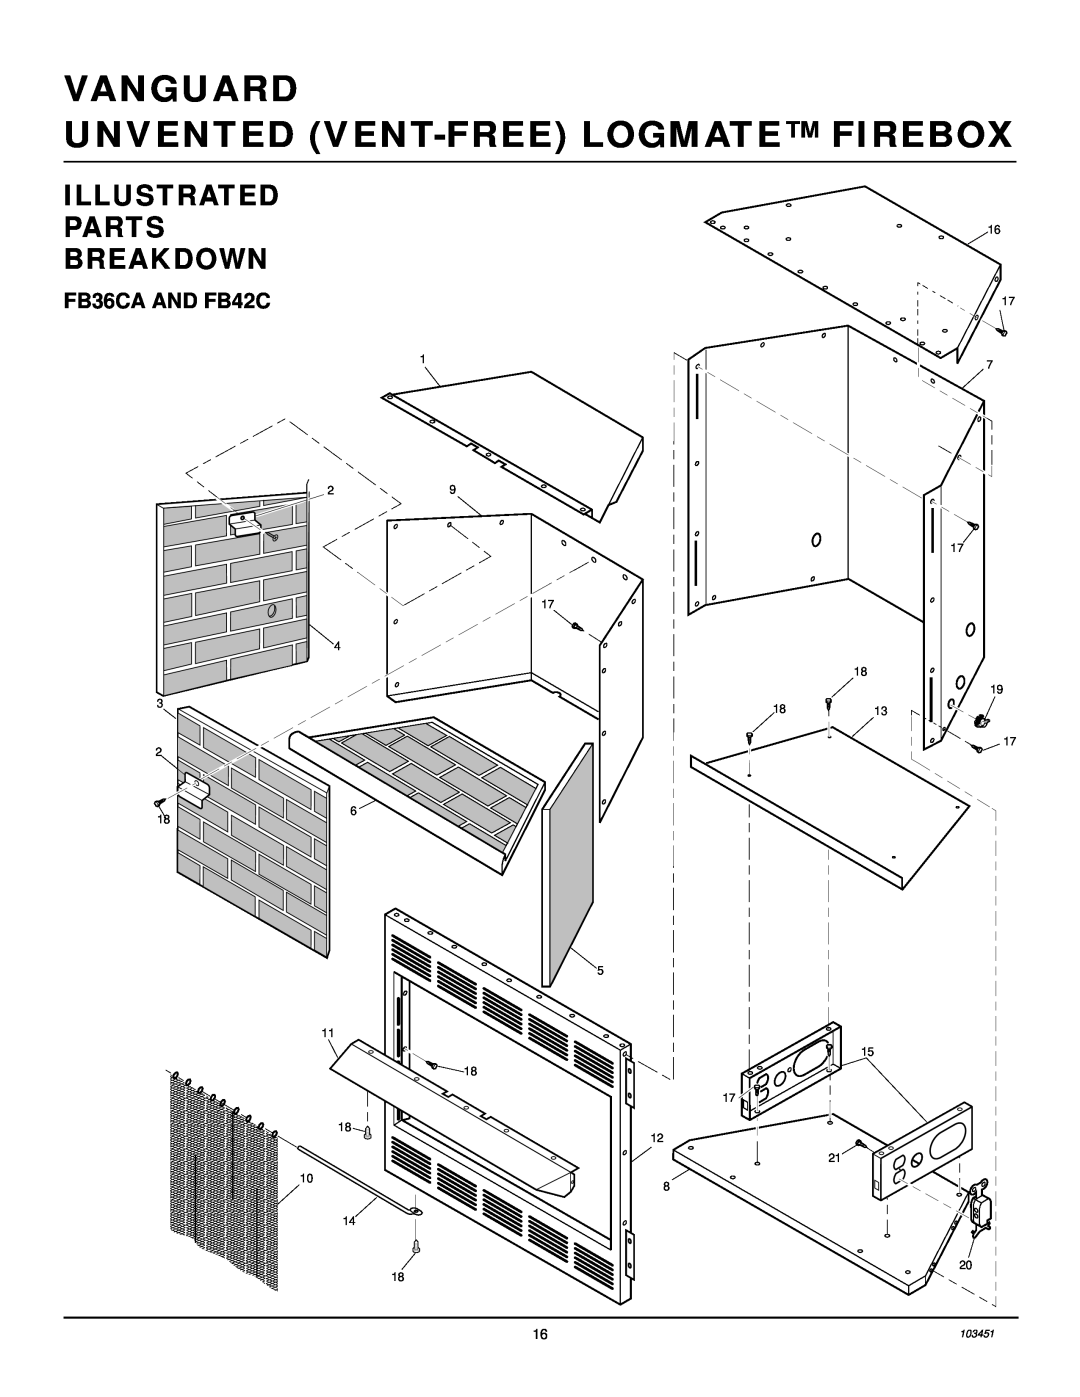 Desa FB36NCA, FB42NC, FB36CA, FB42C Illustrated Parts Breakdown, Vanguard Unvented Vent-Freelogmate Firebox 